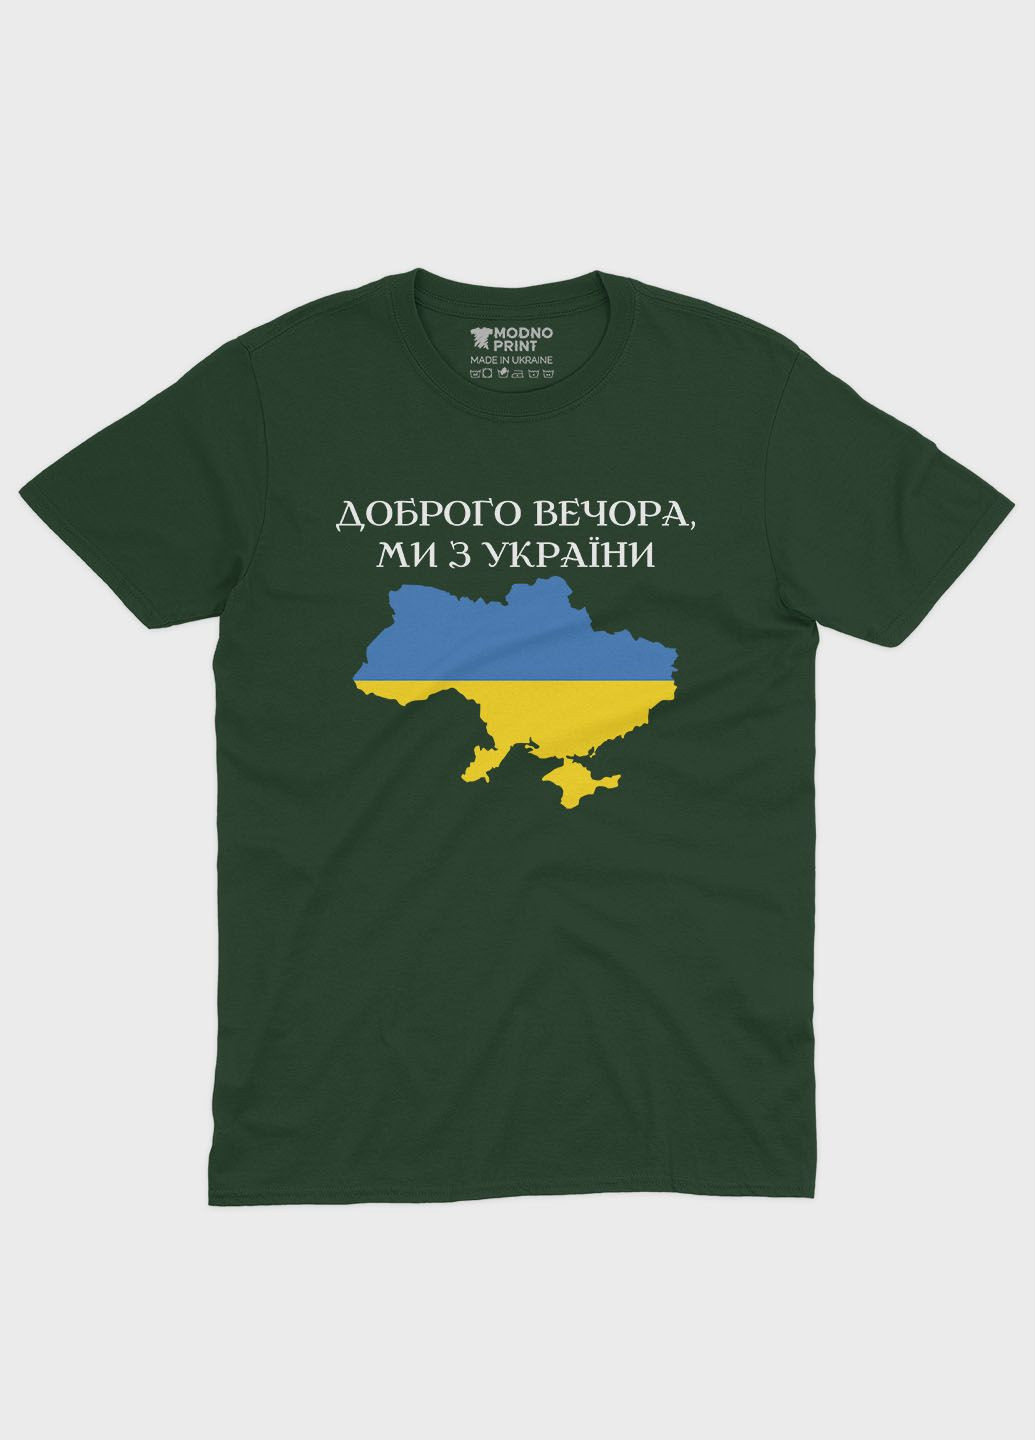 Темно-зеленая летняя женская футболка с патриотическим принтом добрый вечер (ts001-2-bog-005-1-048-f) Modno